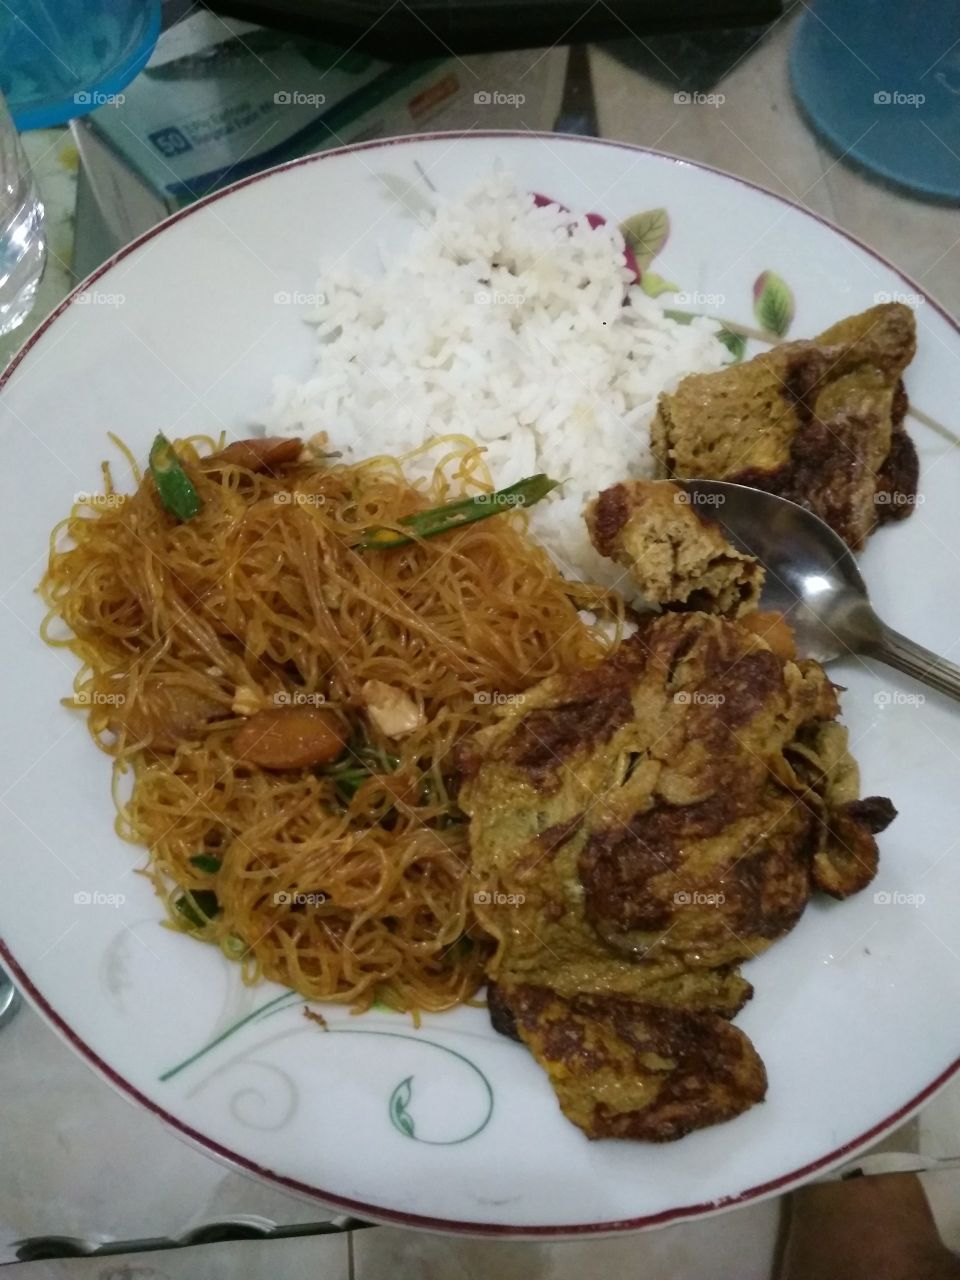 Jakarta food like this